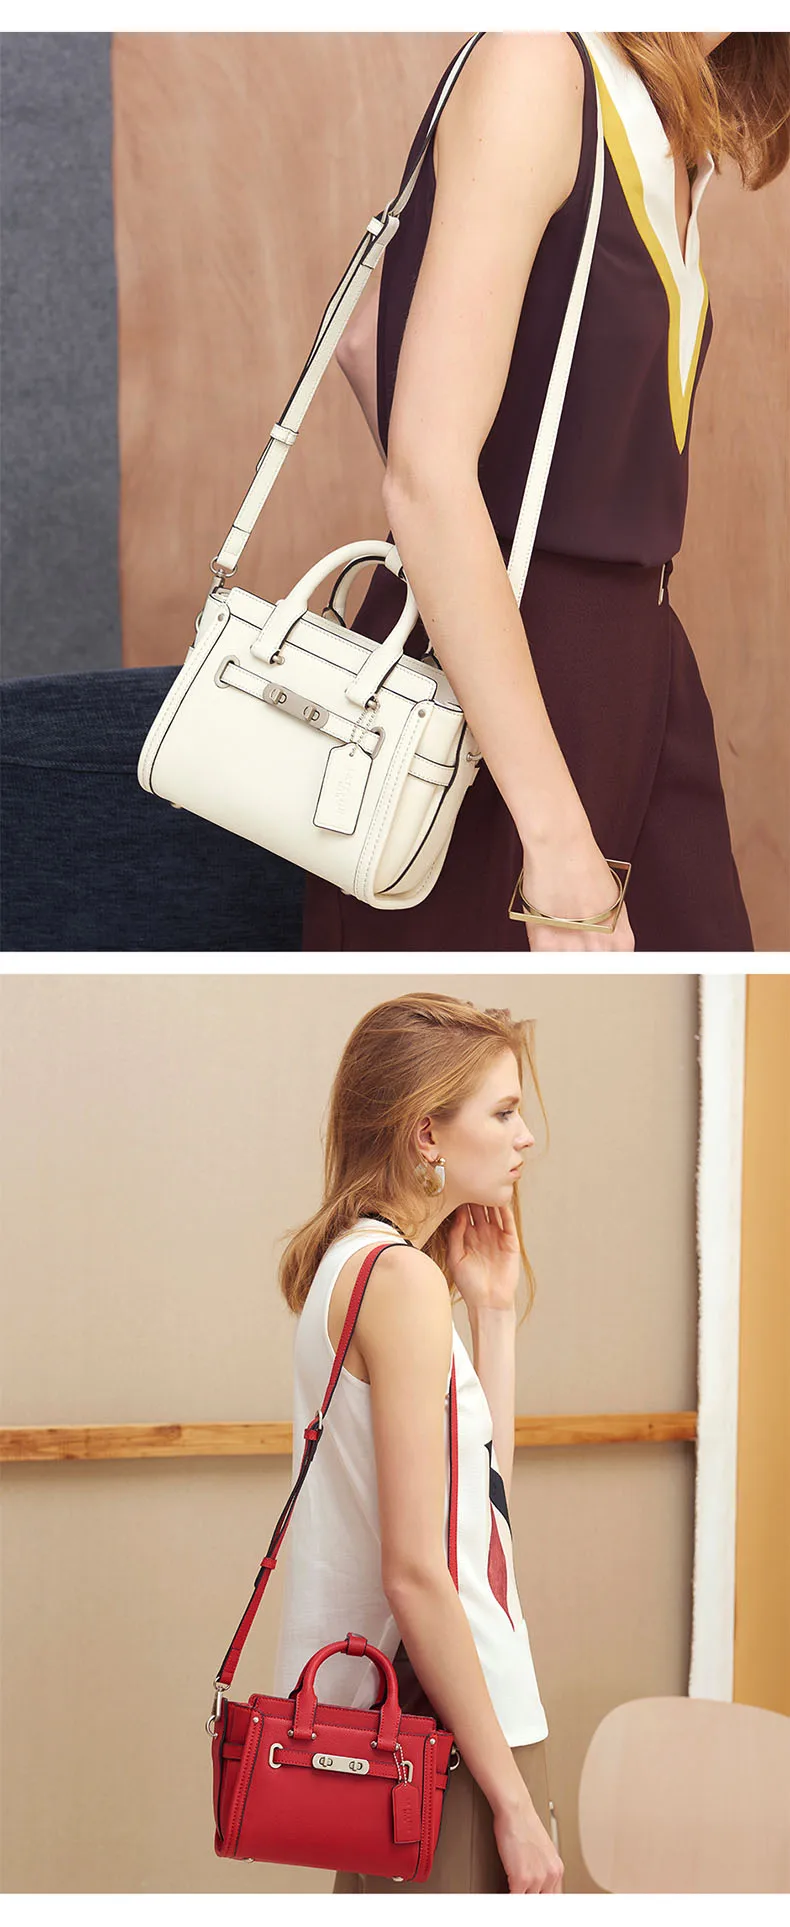 LAFESTIN женская сумка кожаная трапециевидная большая сумка через плечо роскошные дизайнерские сумки известный бренд женские сумки